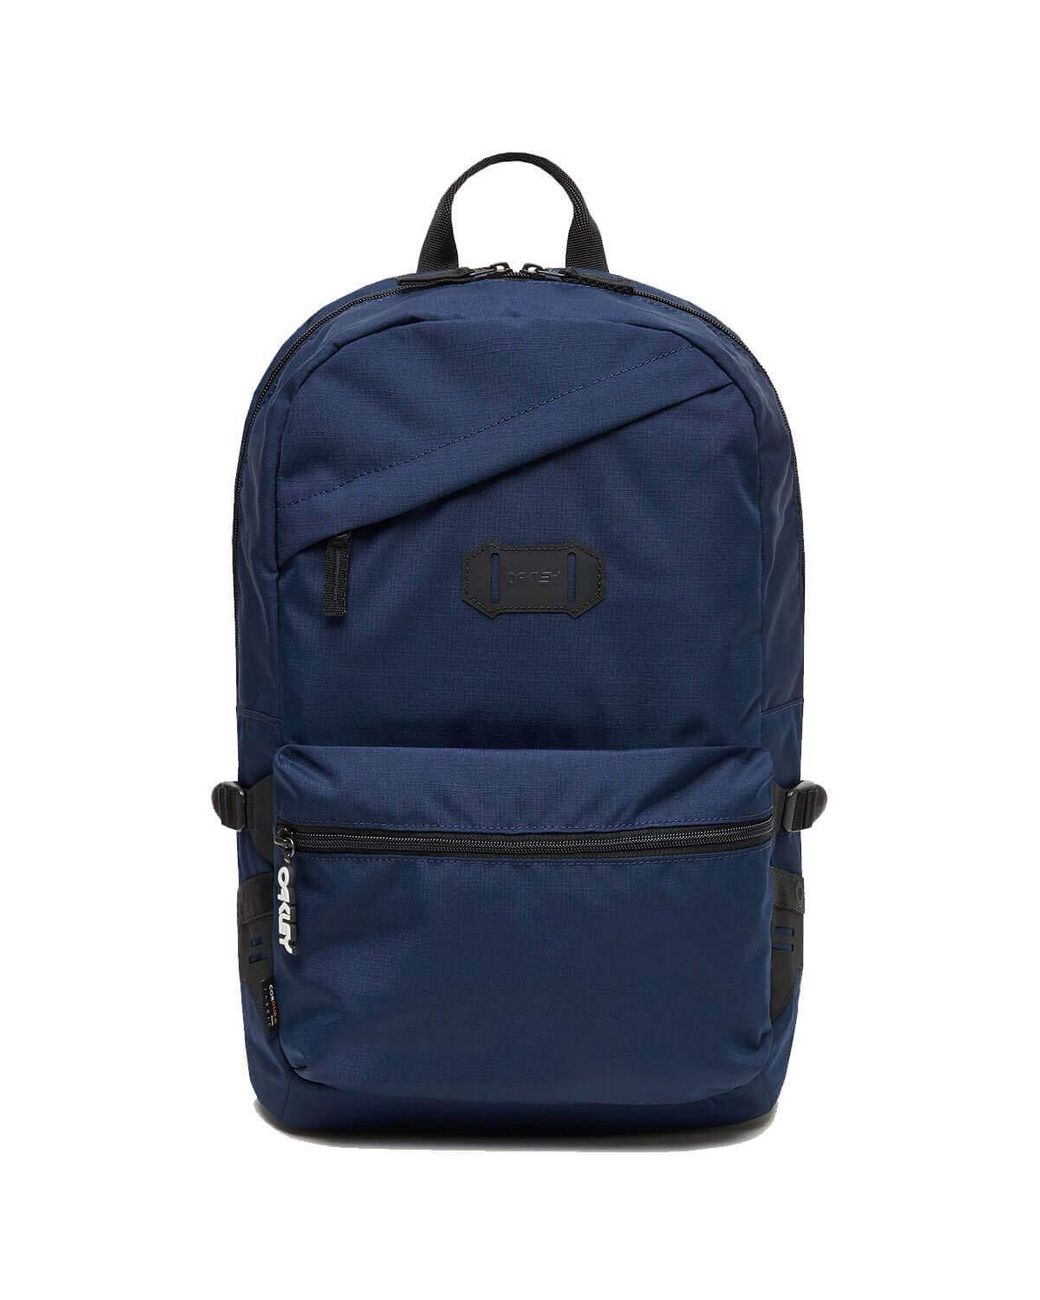 Oakley Street 2.0 Backpack in Black Iris (Blue) - Save 35% - Lyst